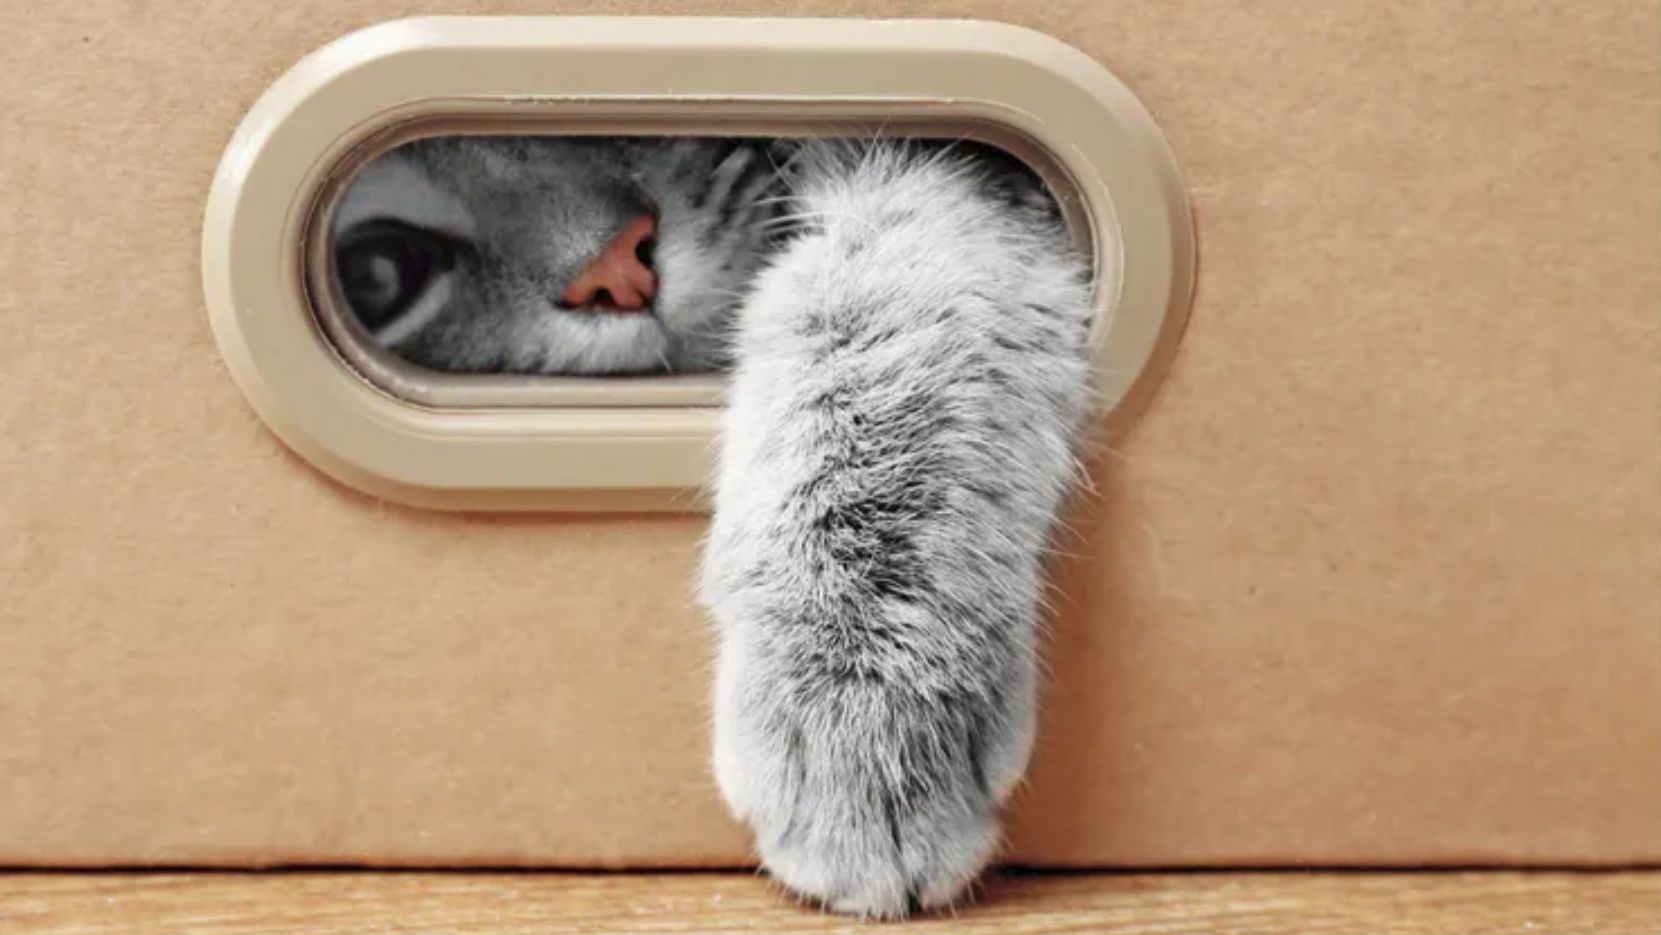 A cat inside a box